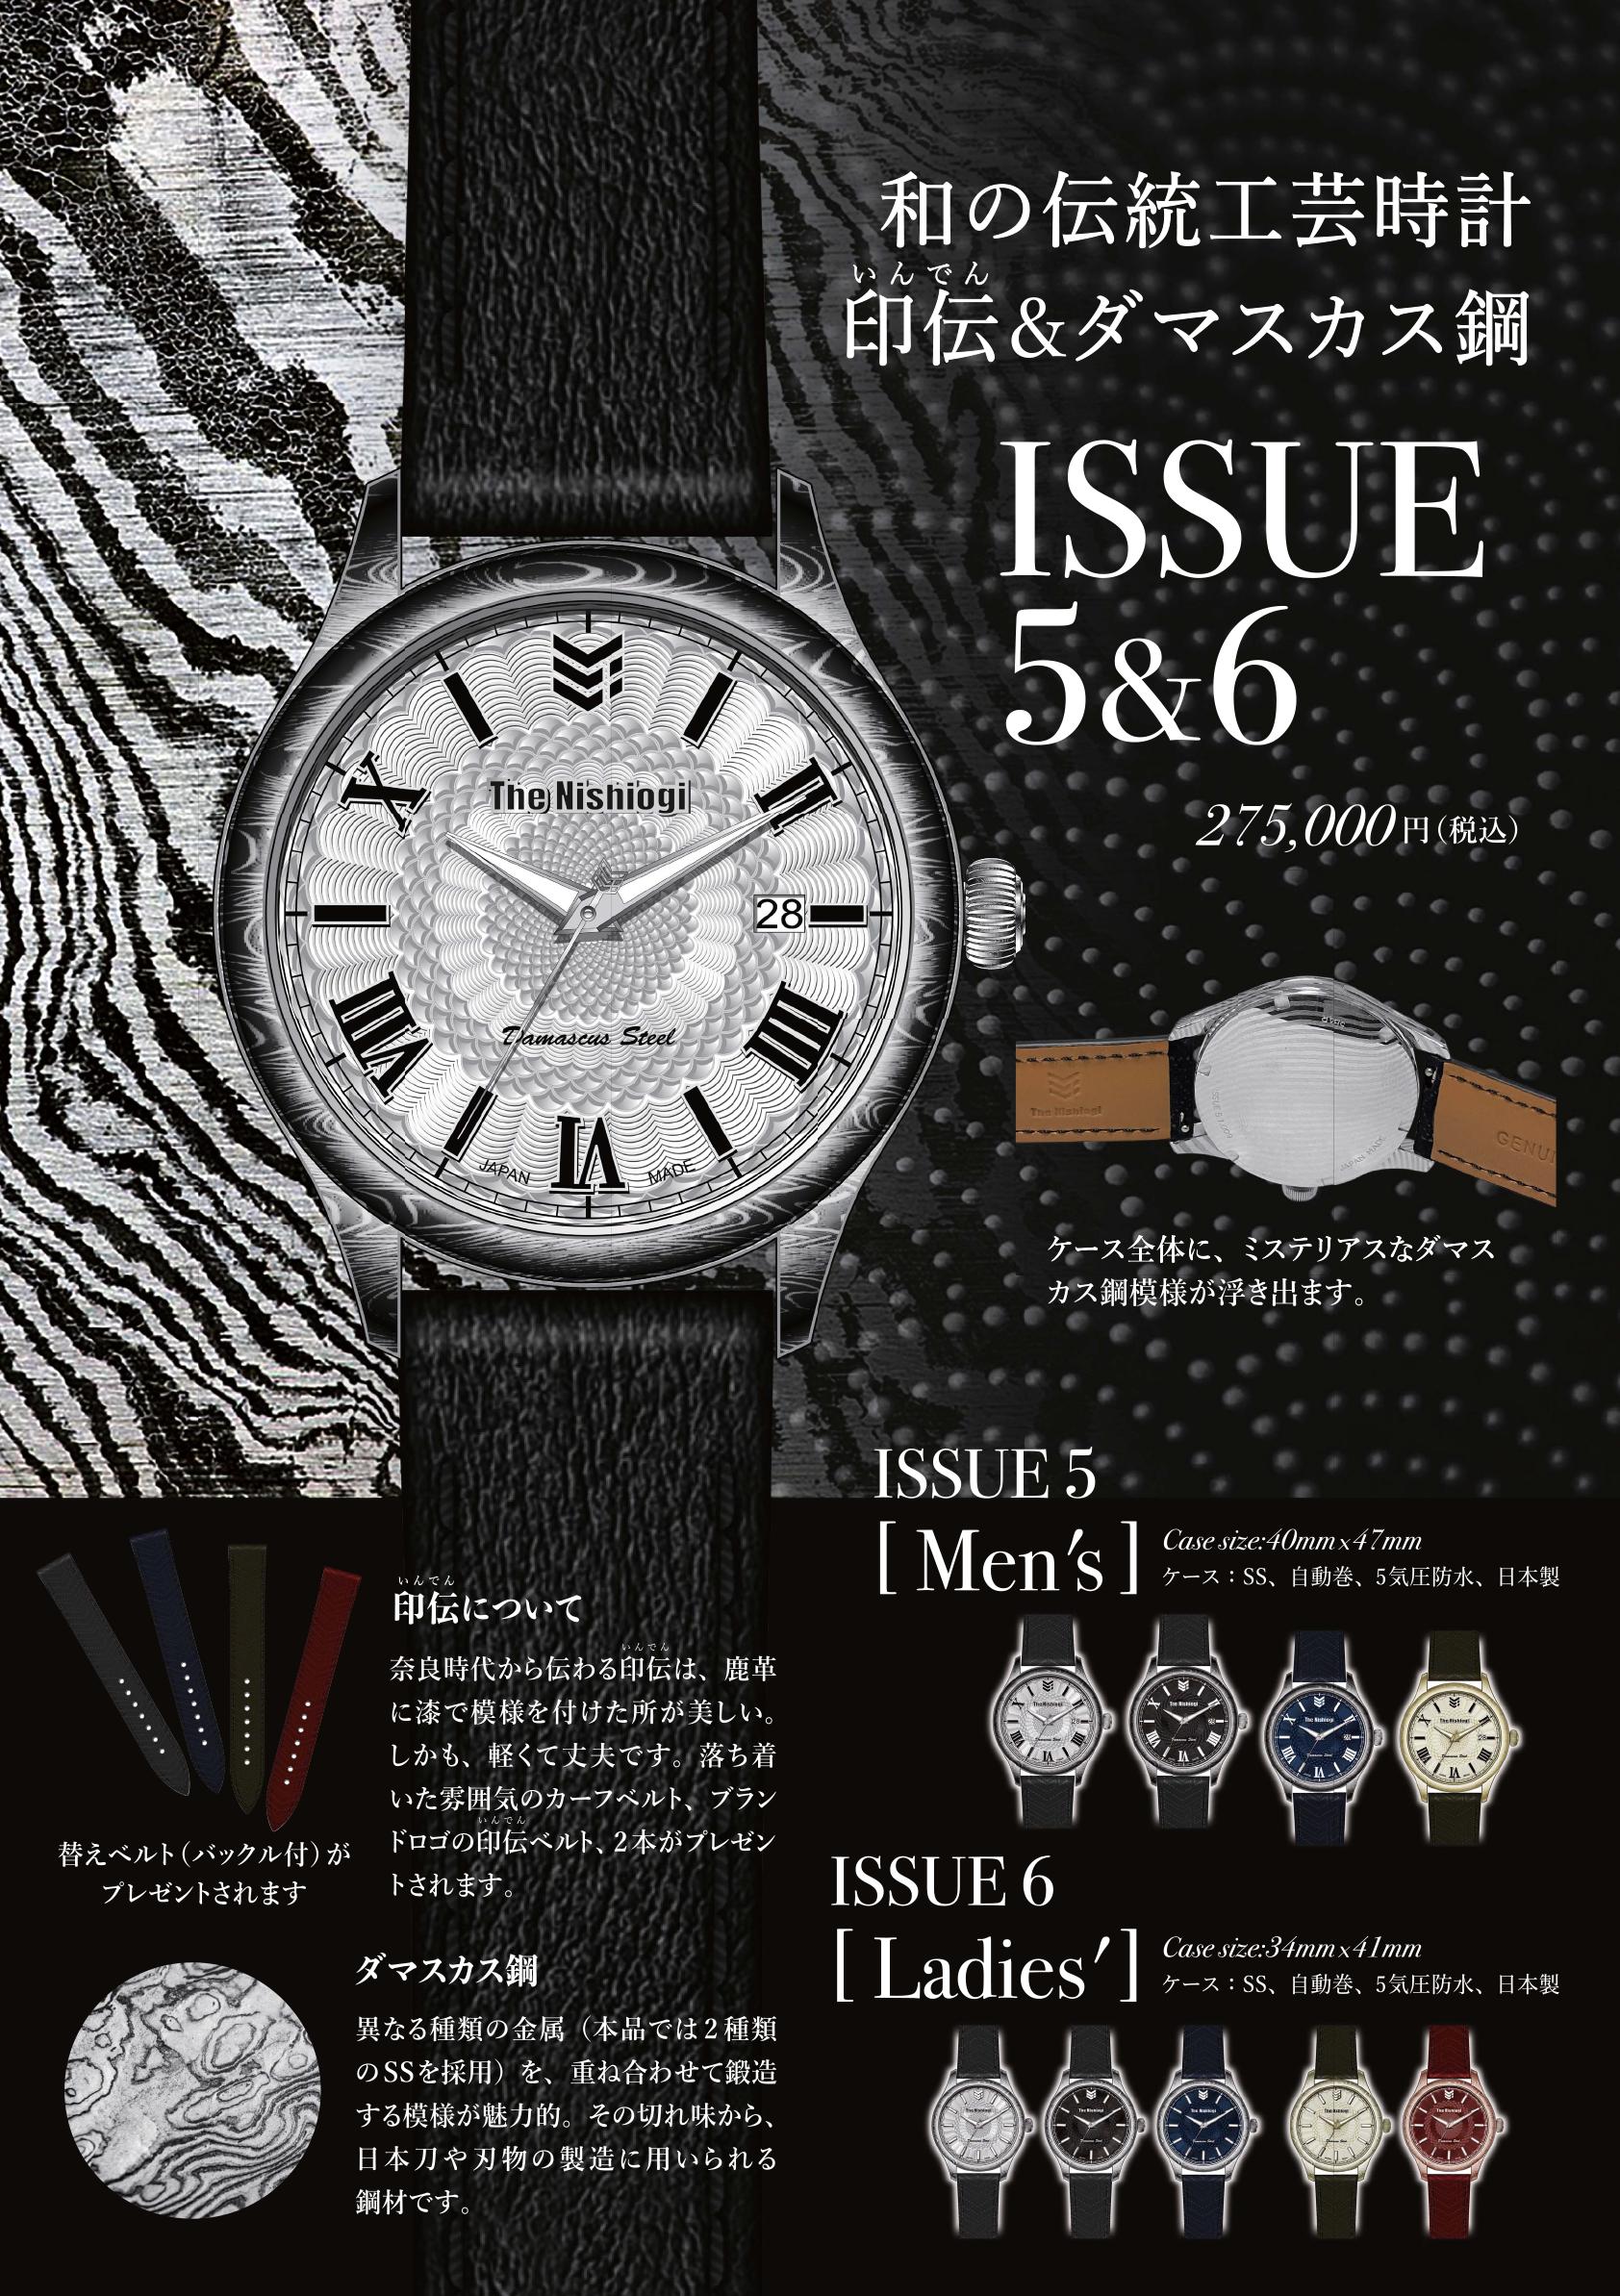 西荻窪発の新たな日本製・腕時計ブランド「The Nishiogi」から、印伝とダマスカス鋼を用いたISSUE 5＆6がデビ...